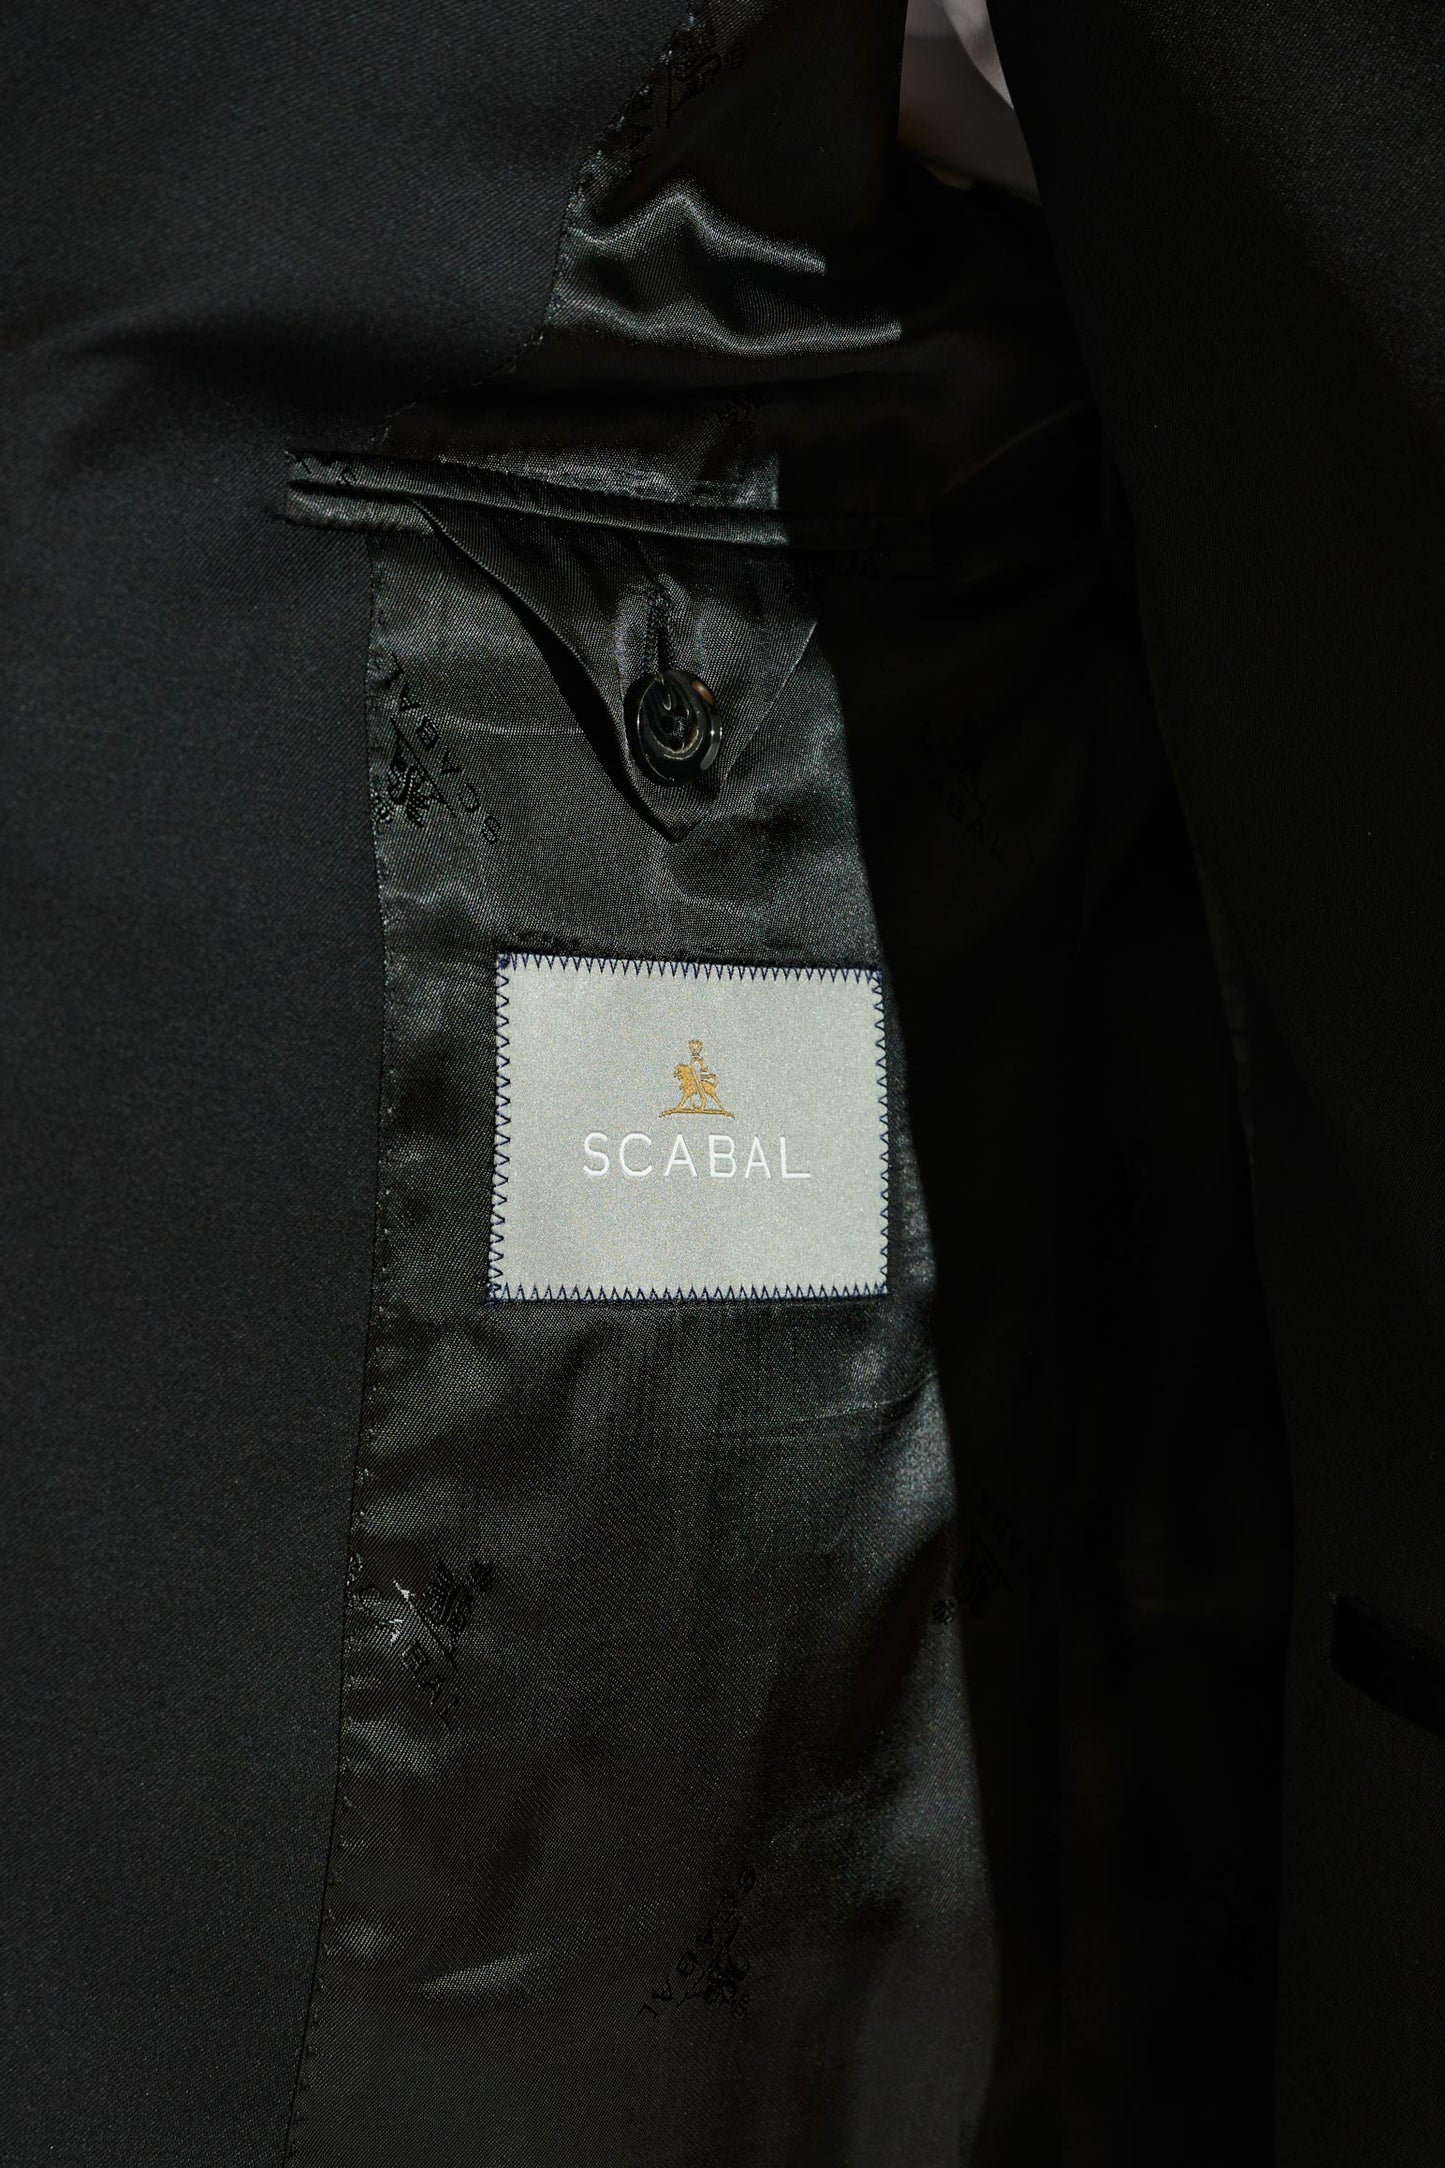 Soho Suit New Deluxe Black